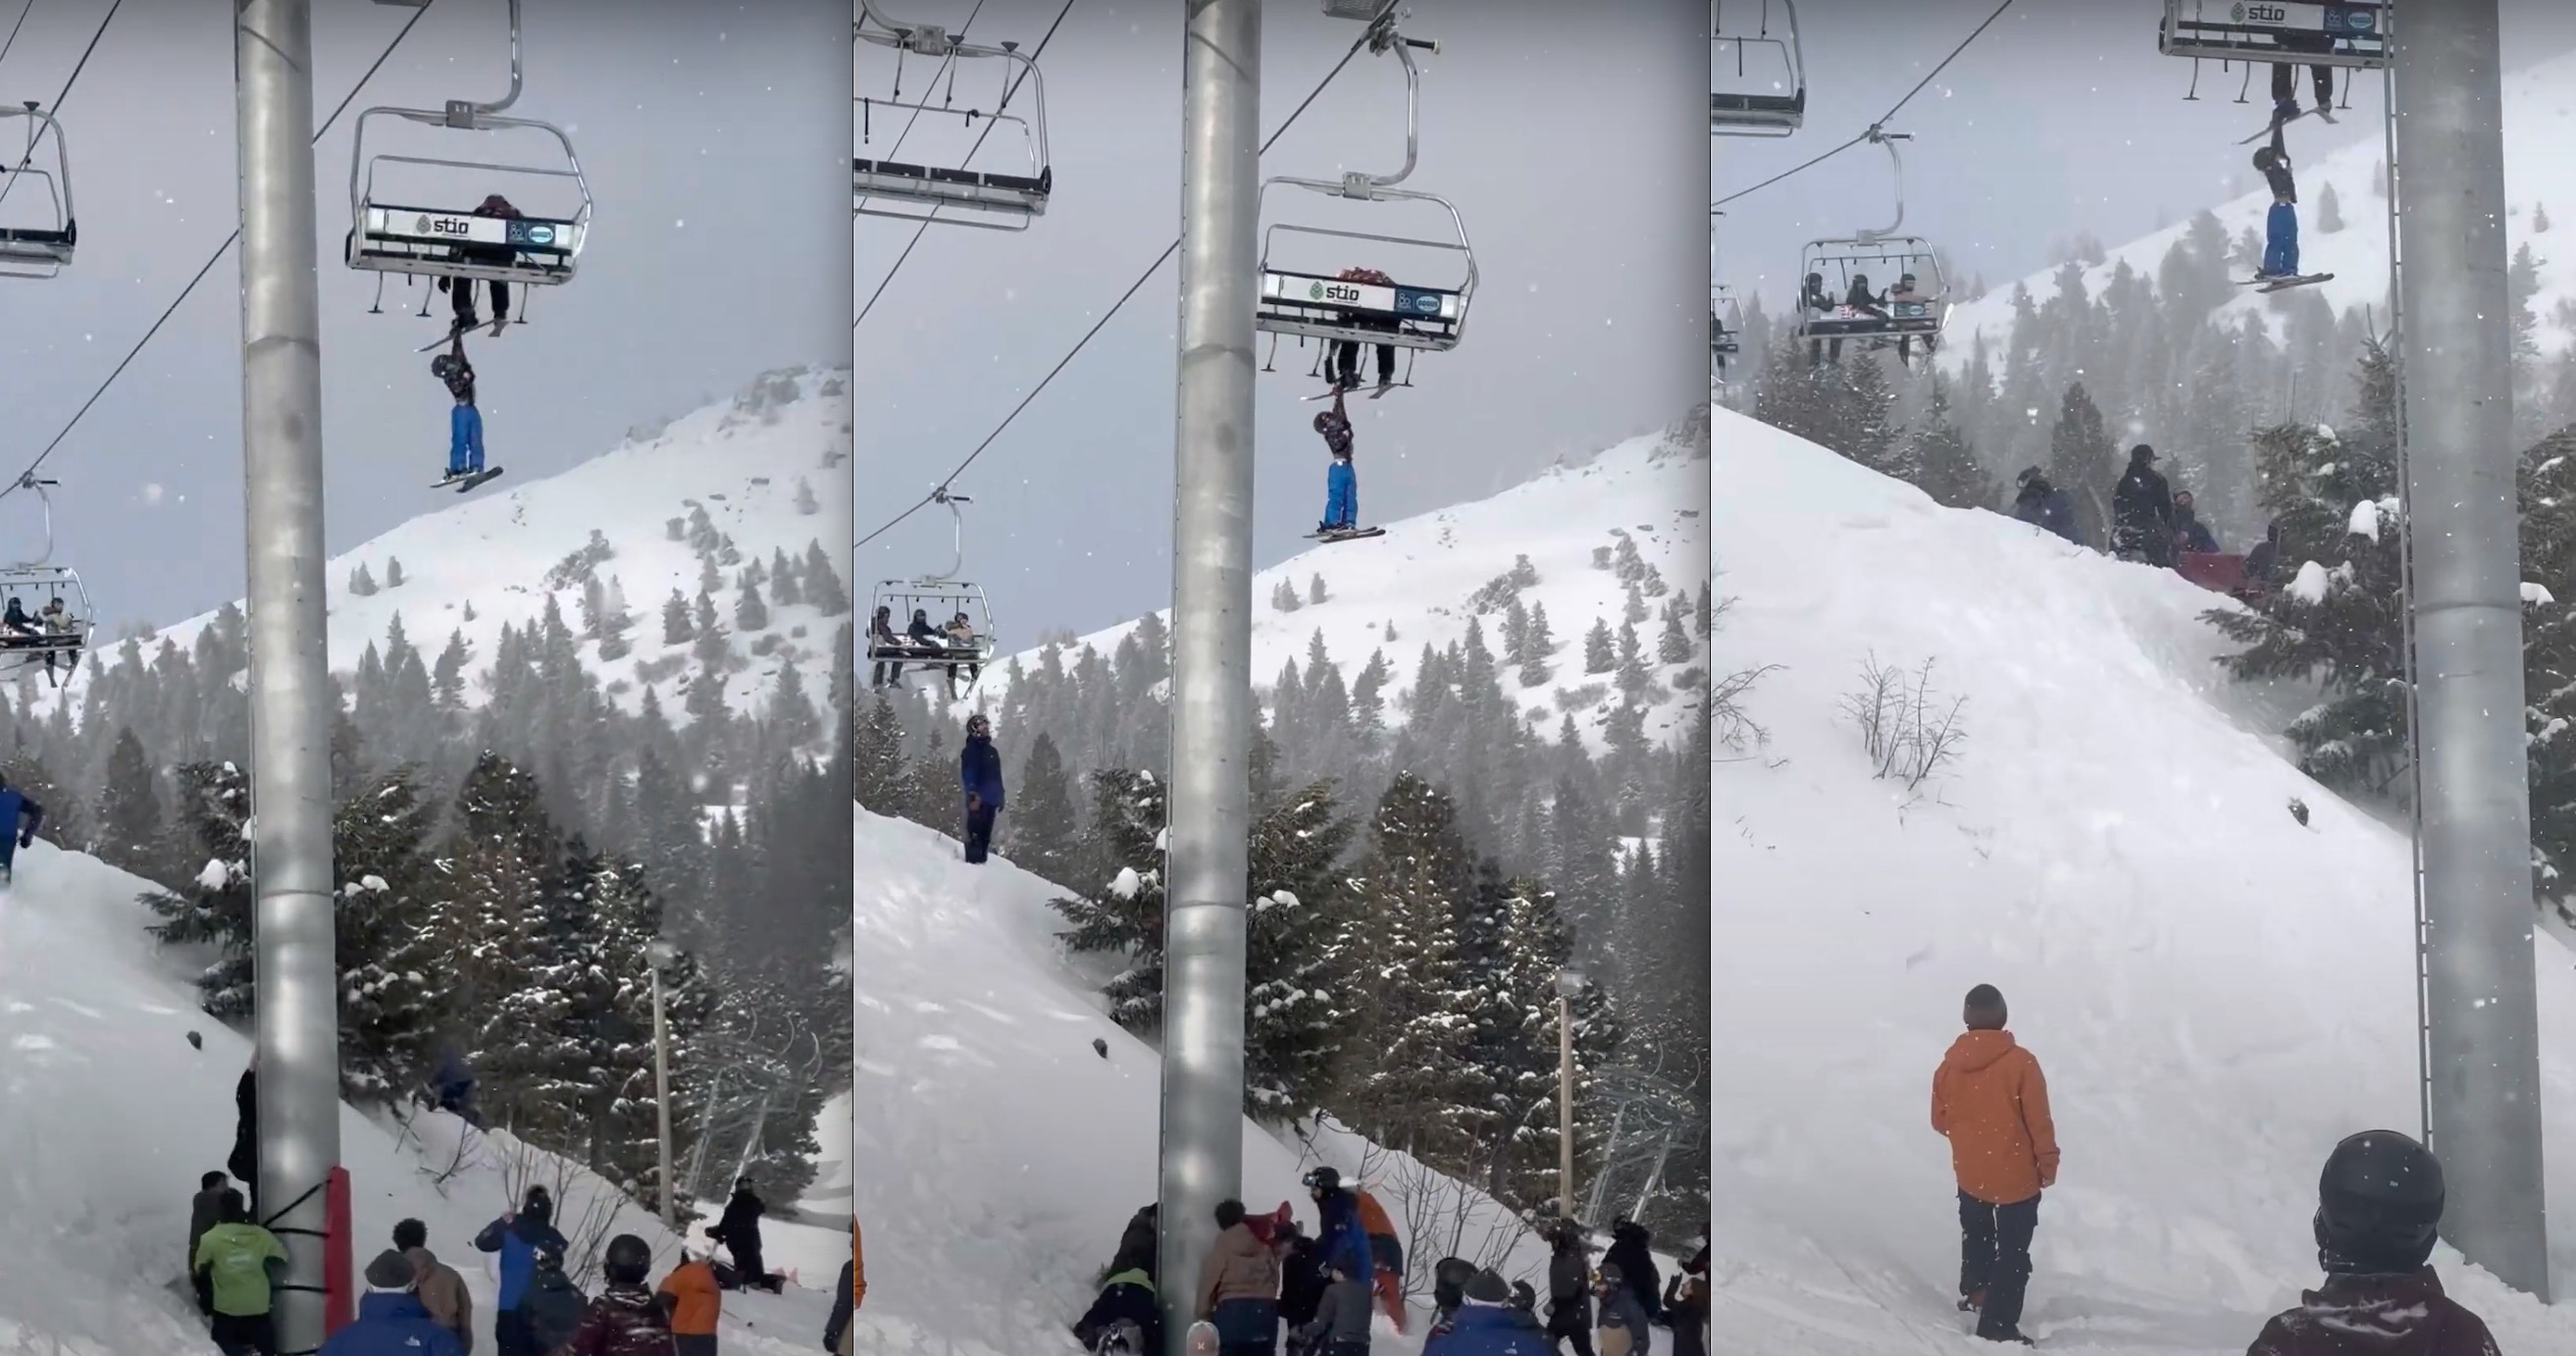 VIDEO: Little Kid Dangles From Chairlift @ Bogus Basin Ski Resort